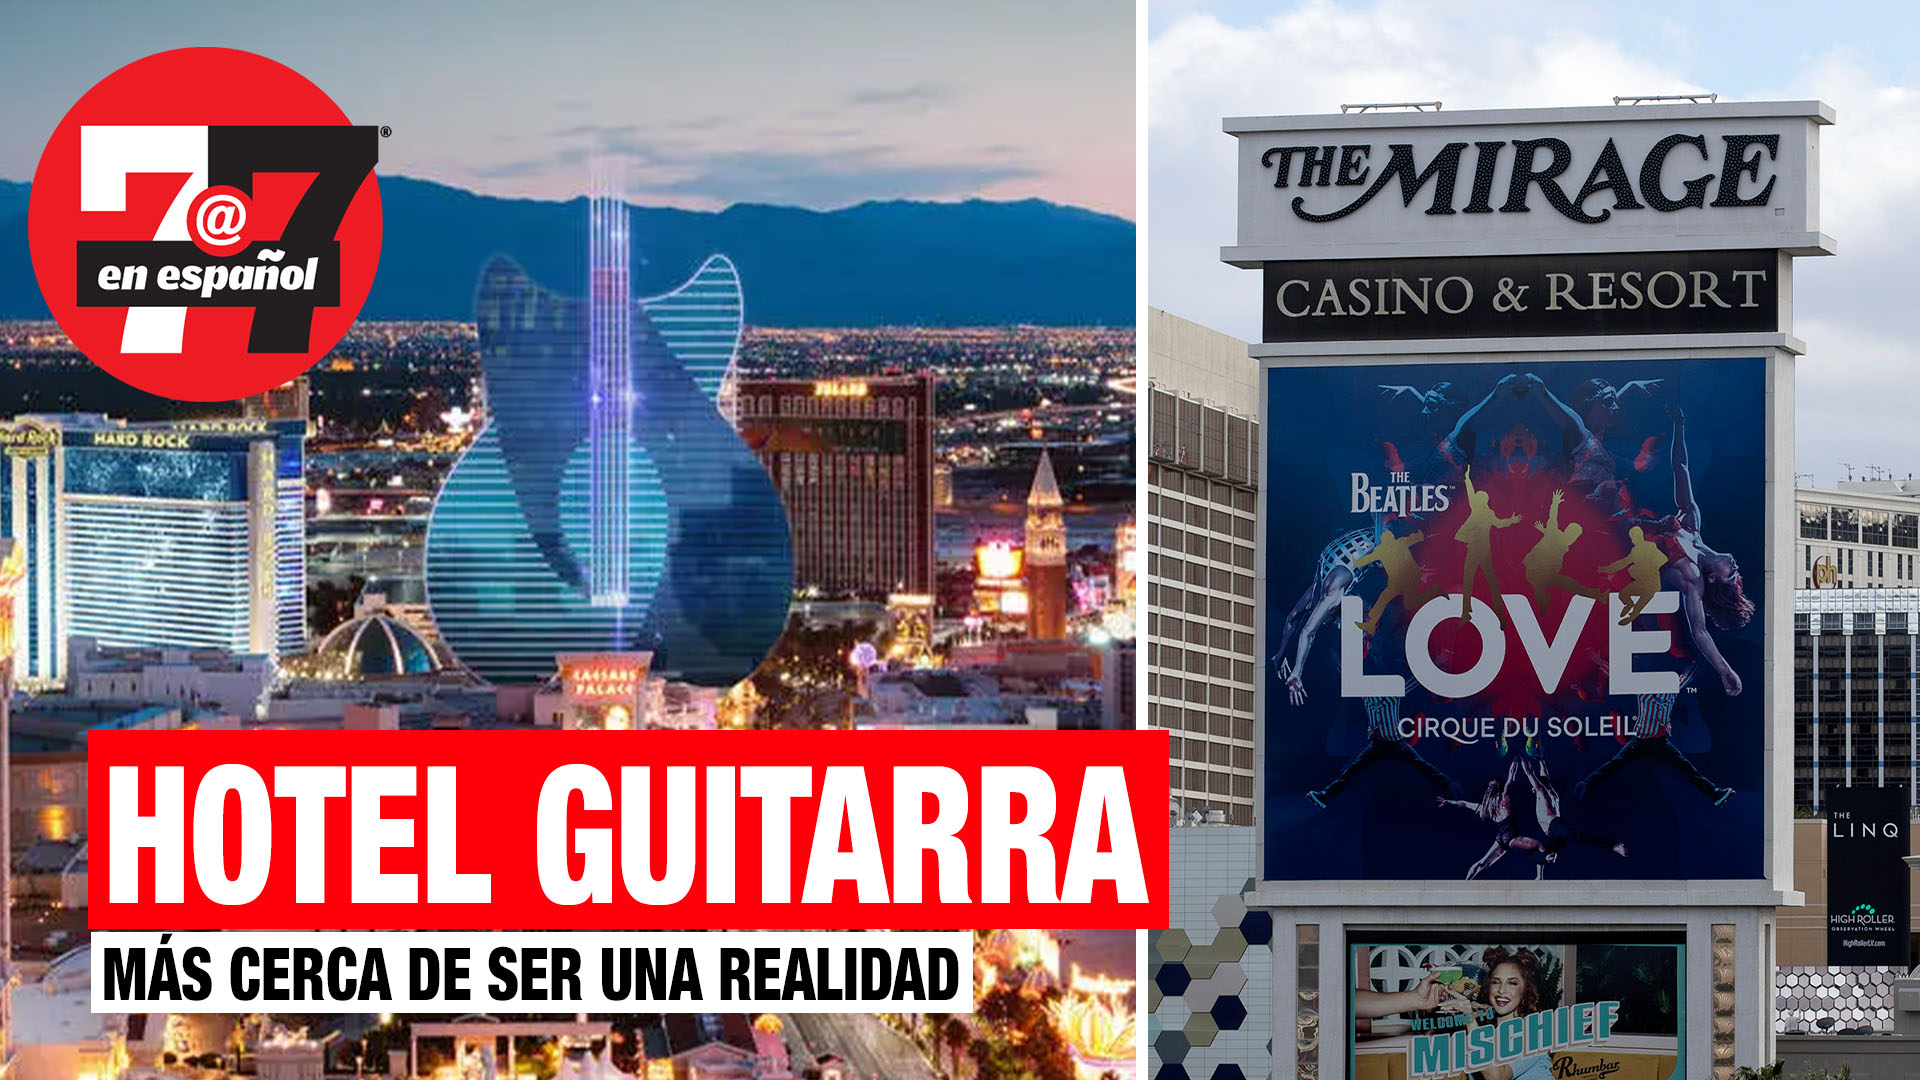 Noticias de Las Vegas | Hotel de guitarra en el Strip más cerca de construirse